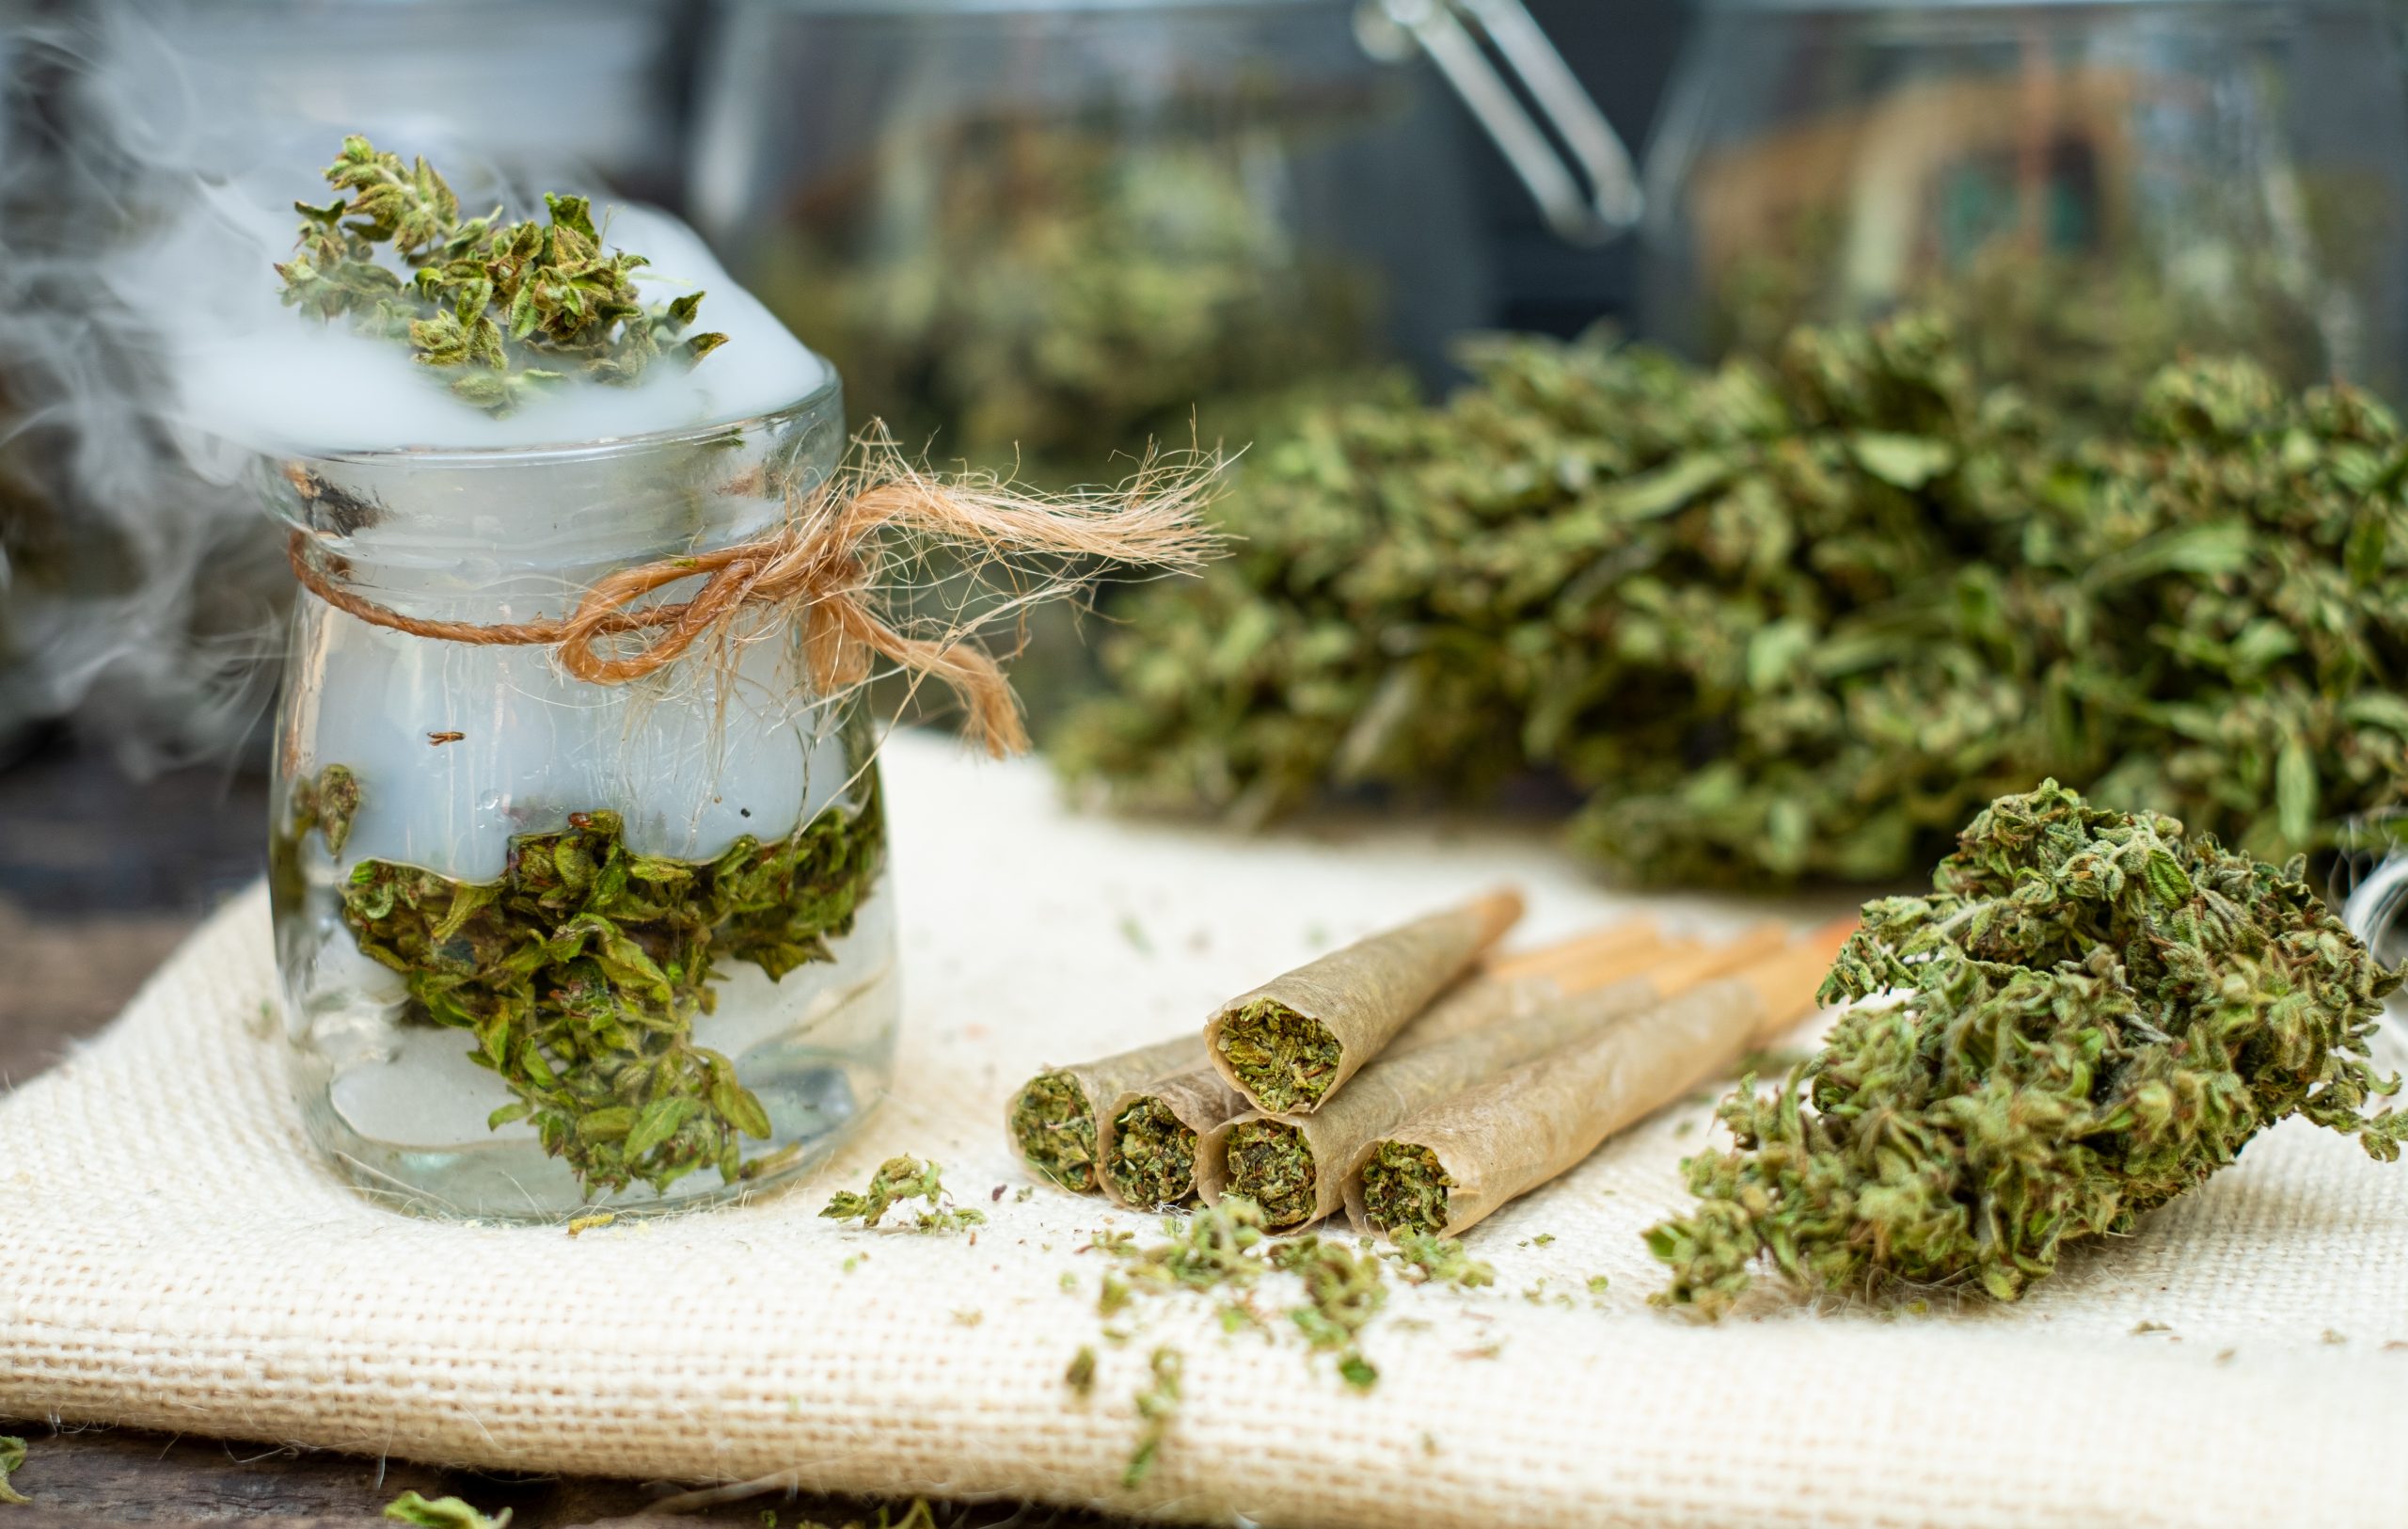 Vorgedrehte Joints mit Cannabis und getrockneten Cannabisblüten auf einem Tisch.